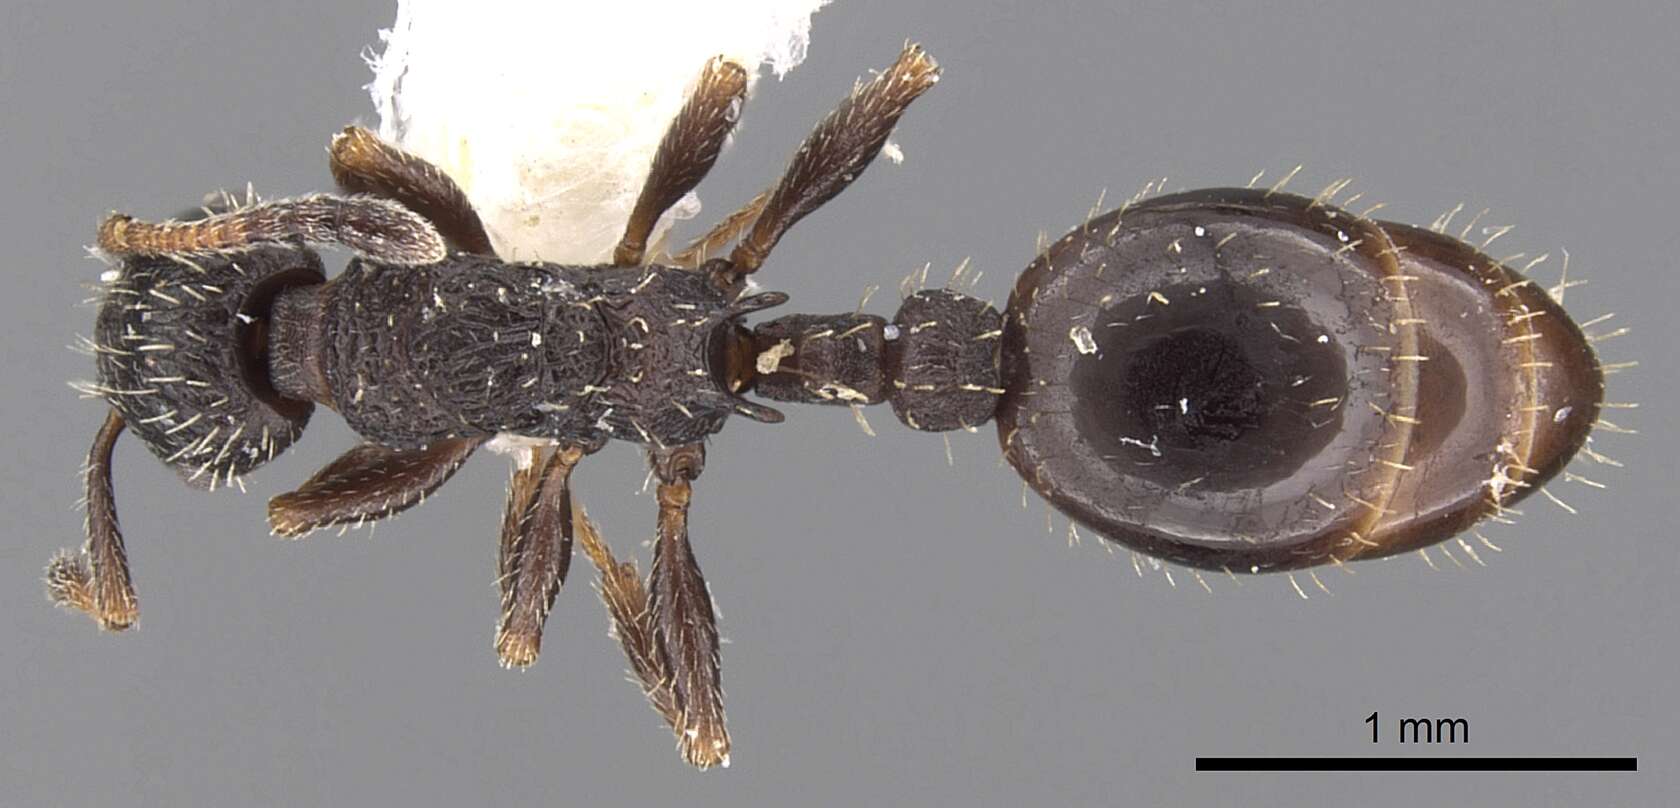 Image of Leptothorax sphagnicola Francoeur 1986